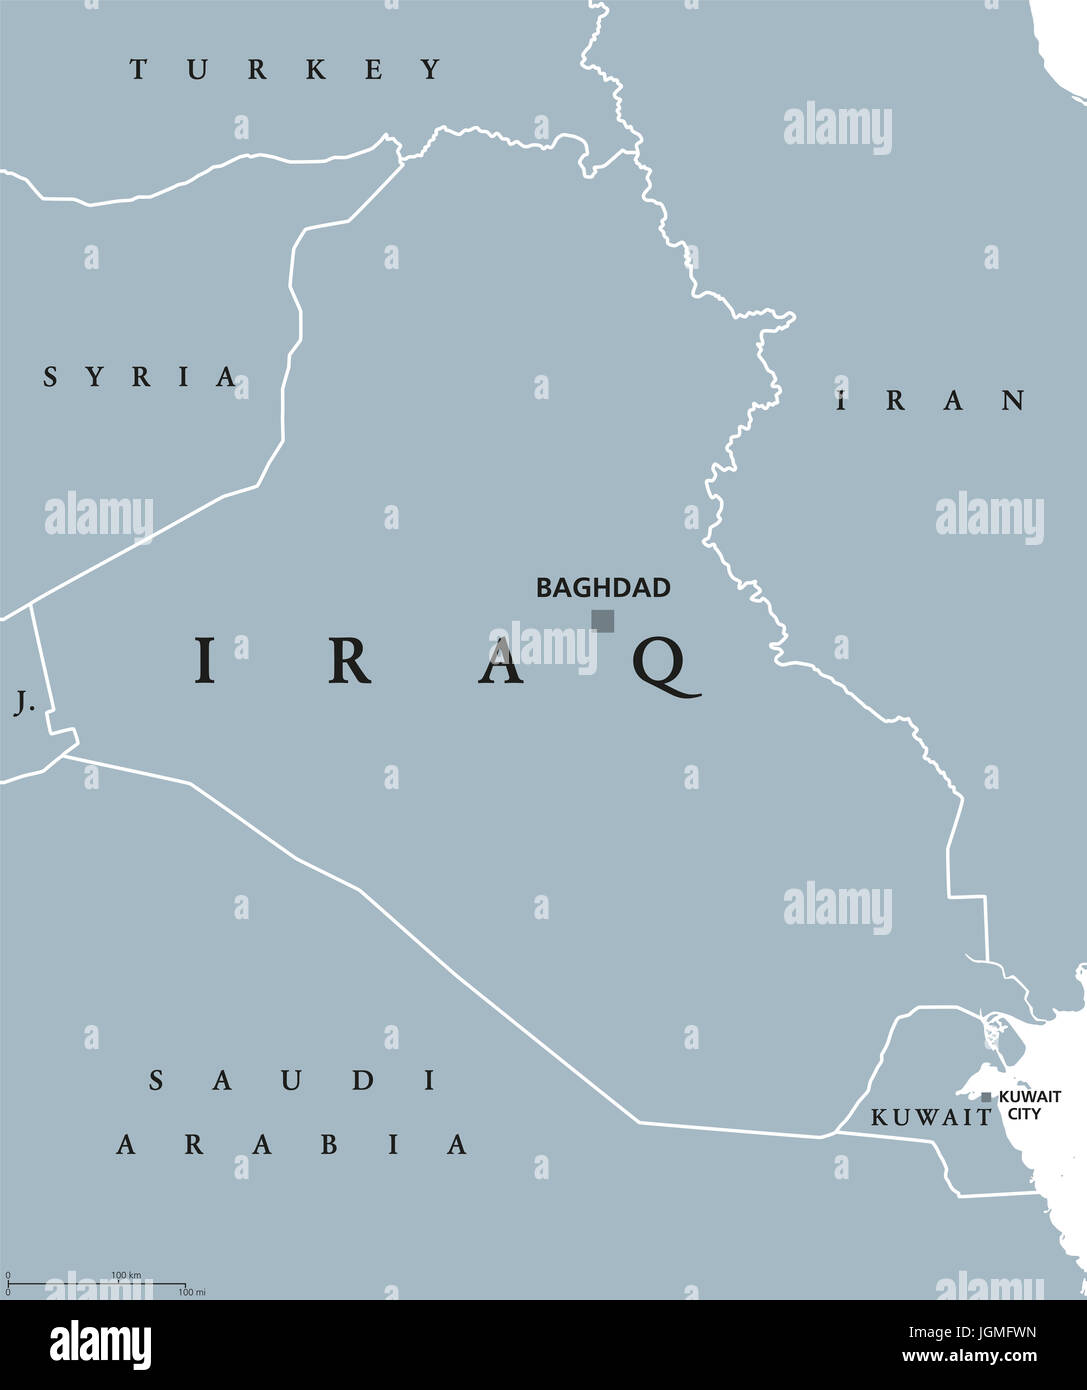 Irak politische Karte mit Hauptstadt Bagdad. Republik und arabischen Land im Nahen Osten, Westasien und am Persischen Golf. Graue Abbildung. Stockfoto